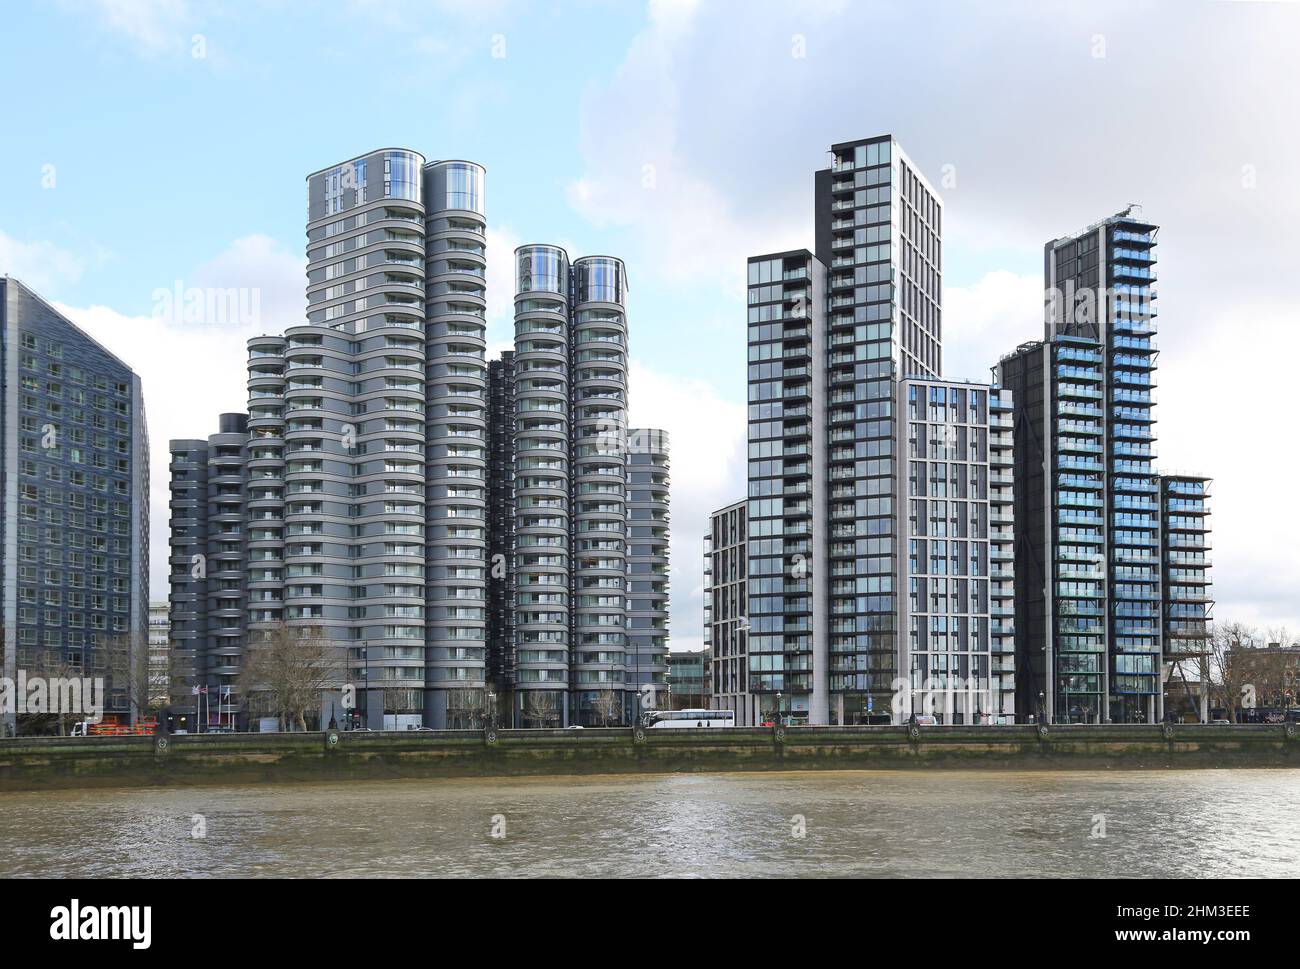 Nouveaux immeubles d'appartements sur le Albert Embankment de Londres. Comprend la corniche de Foster + Partners (à gauche) et les résidences Merano de Richard Rogers (à droite). Banque D'Images